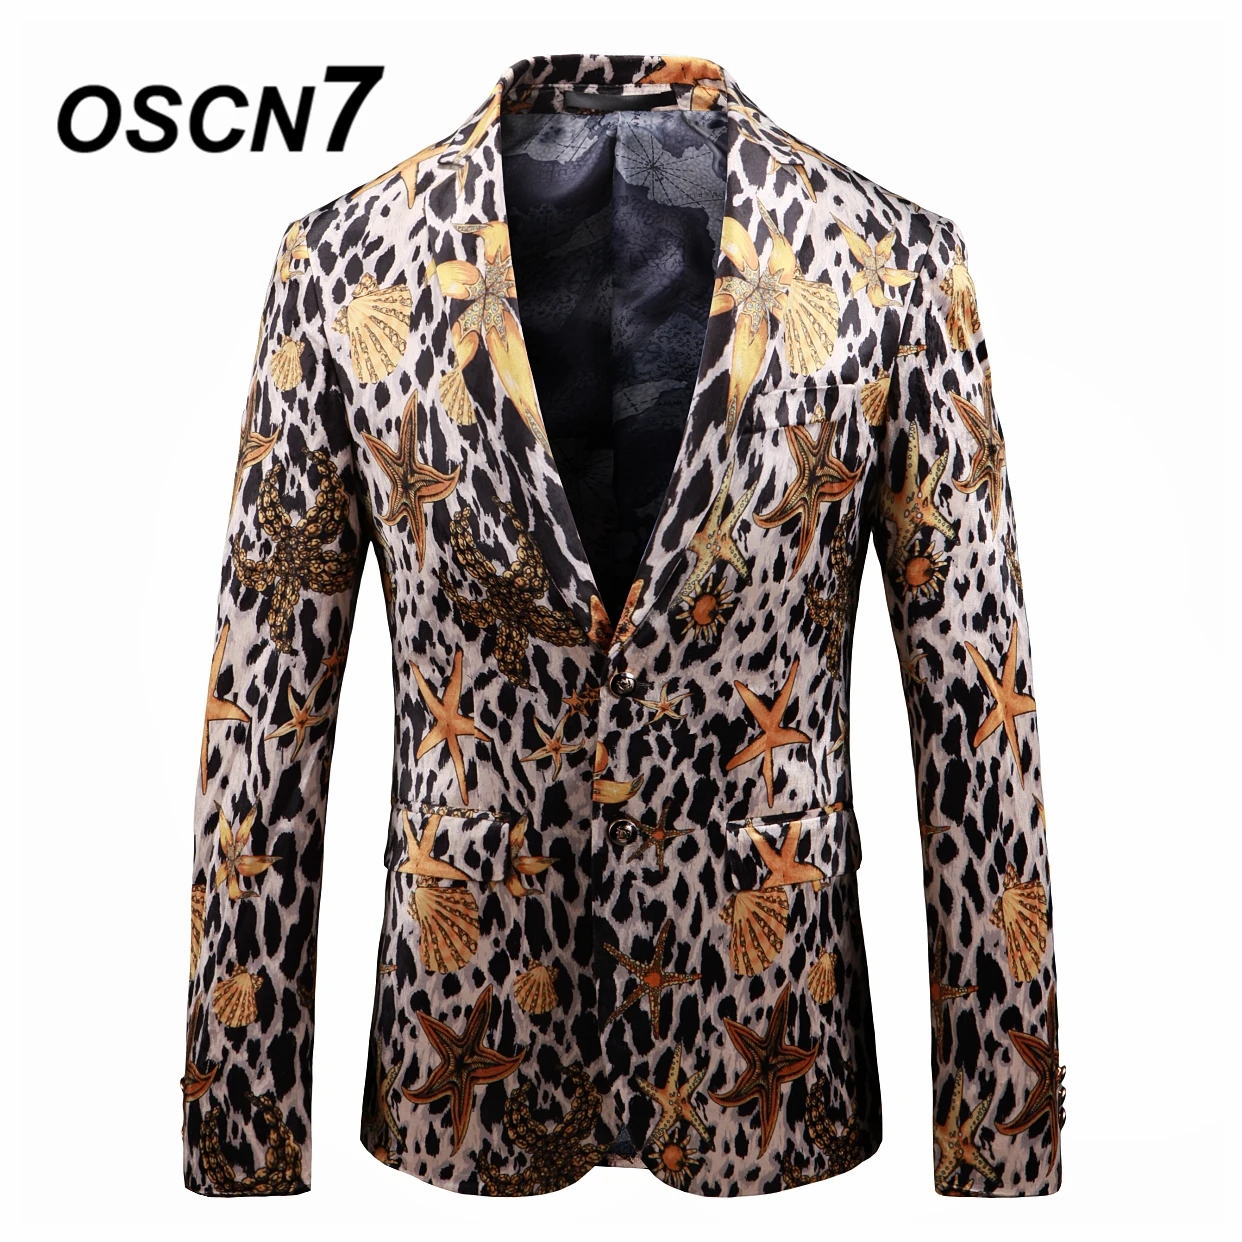 OSCN7 свободное, облегающее Leopard графика Принт блейзер для мужчин 2019 Жених Свадебный блейзер для модные вечерние пиджак 913